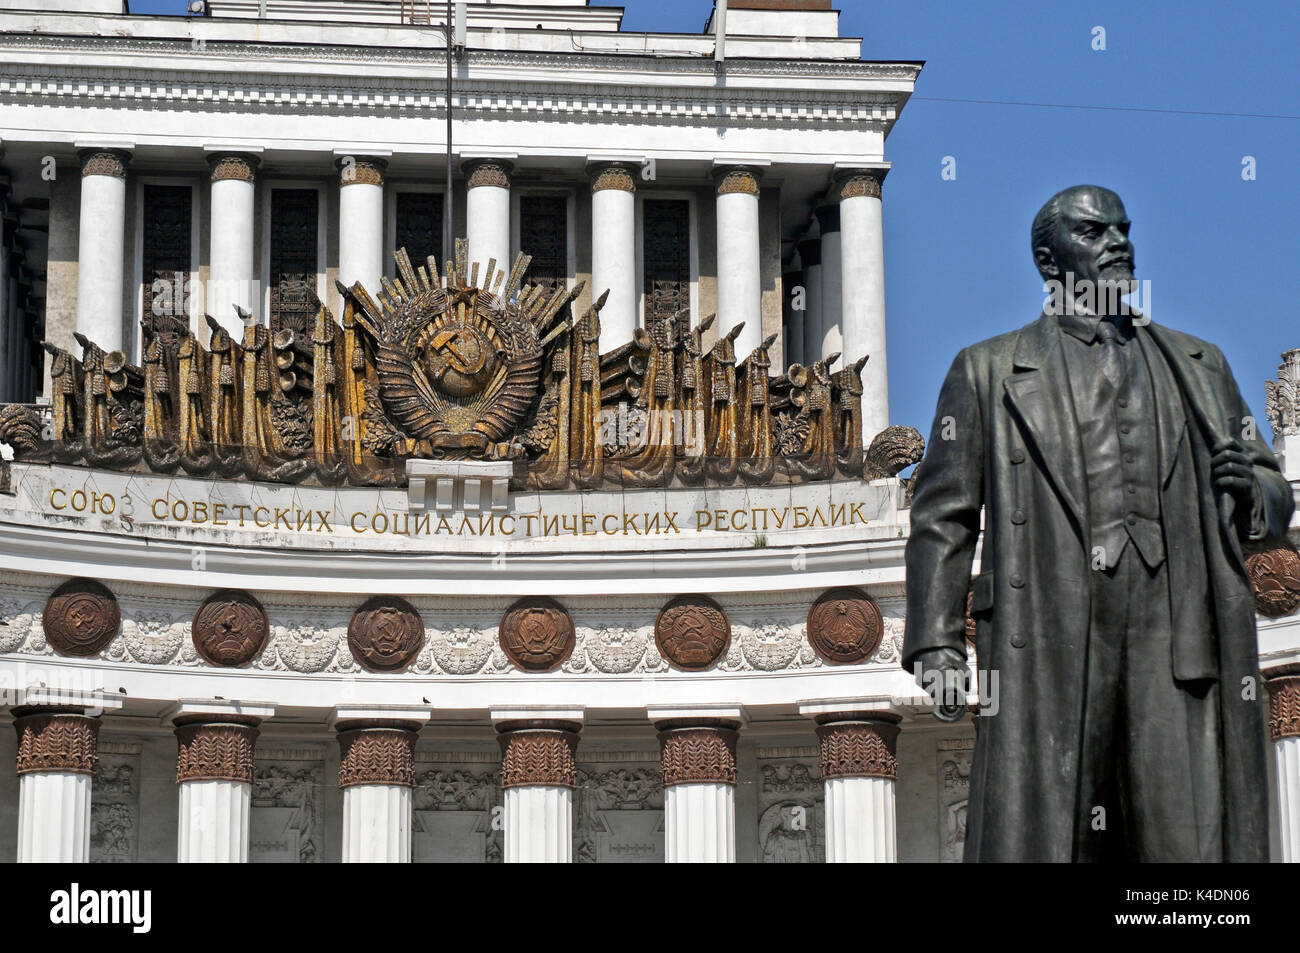 VDNH: statua di Lenin, nella parte anteriore del padiglione centrale (Casa del popolo russo - Dom Narodov Rossii). Mosca, Russia Foto Stock